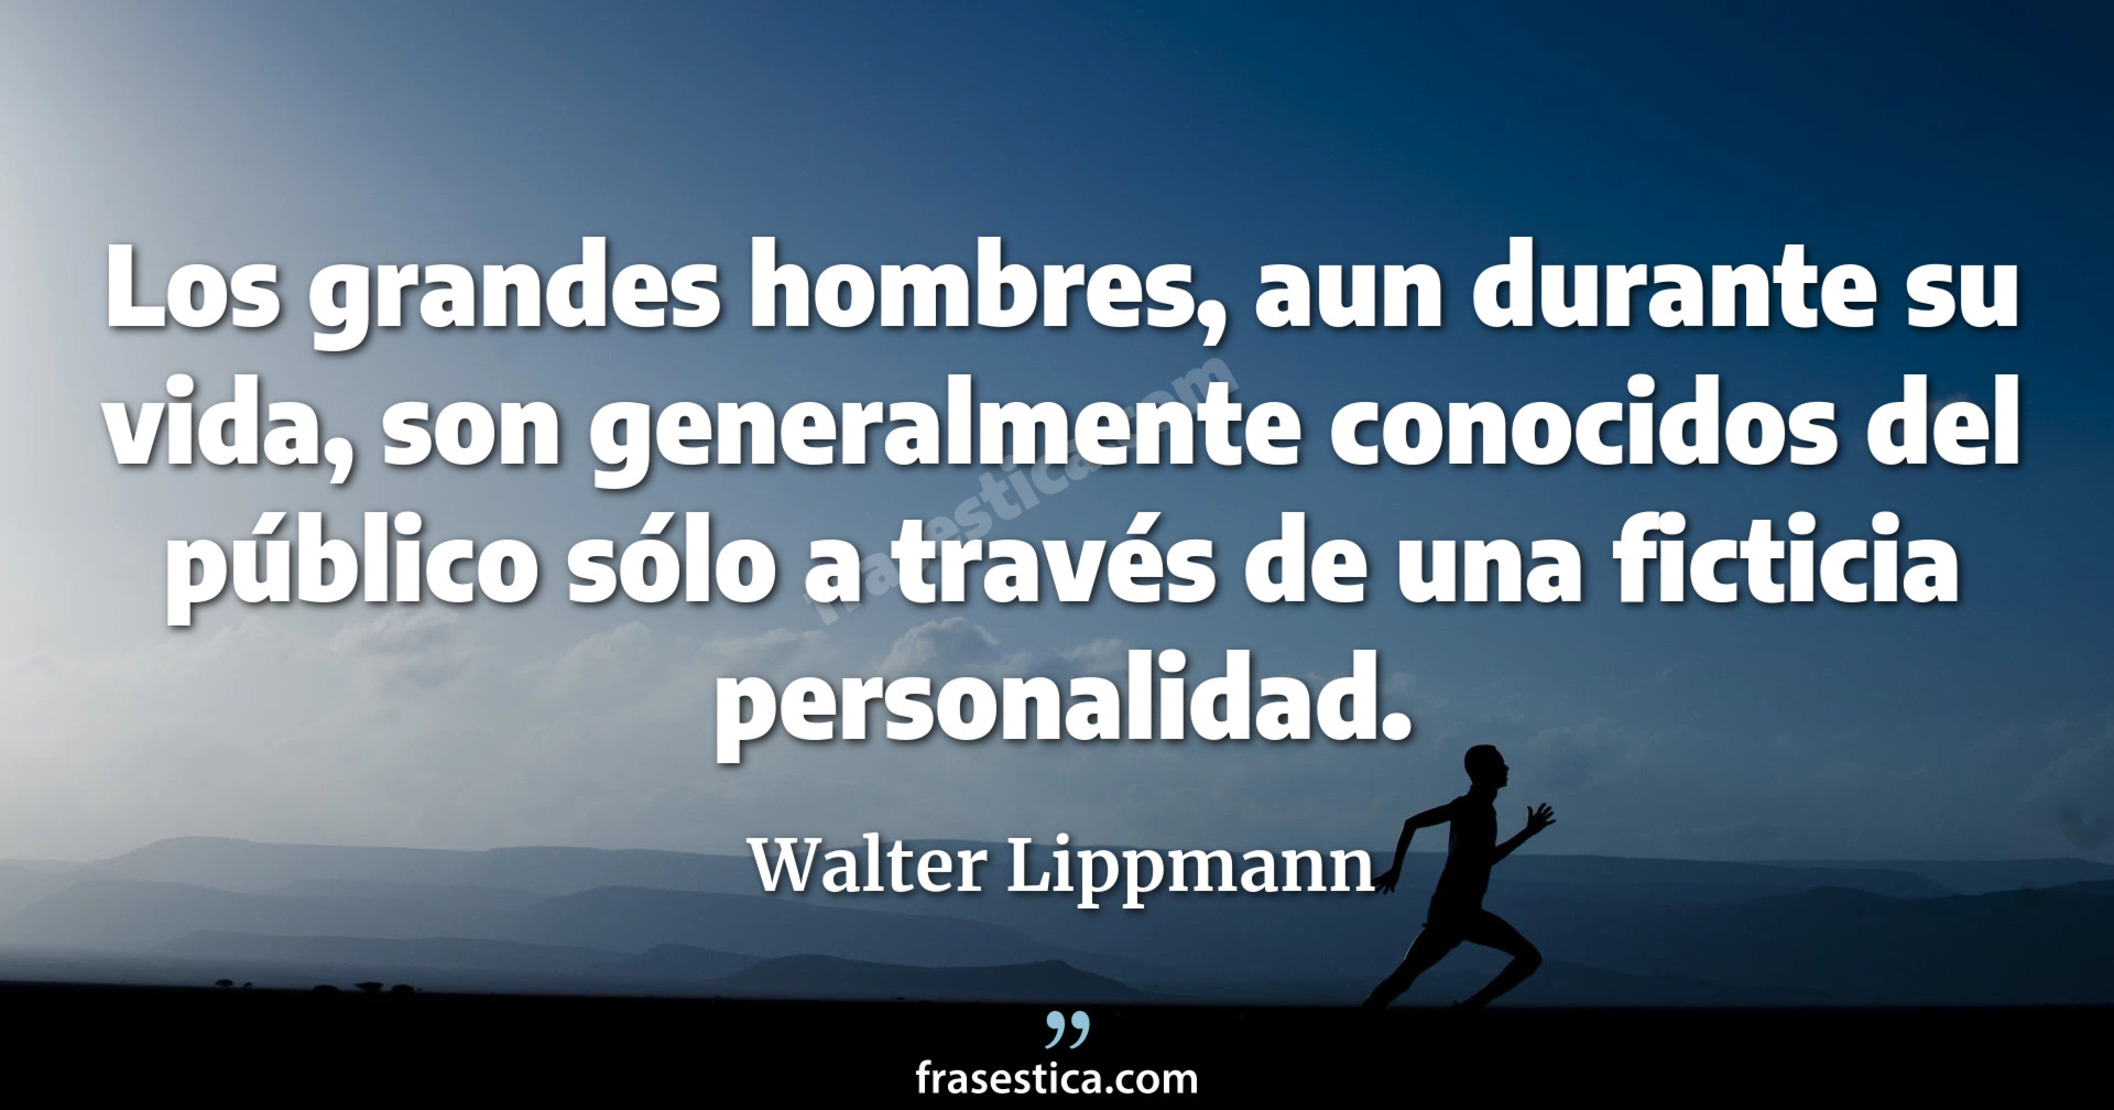 Los grandes hombres, aun durante su vida, son generalmente conocidos del público sólo a través de una ficticia personalidad. - Walter Lippmann